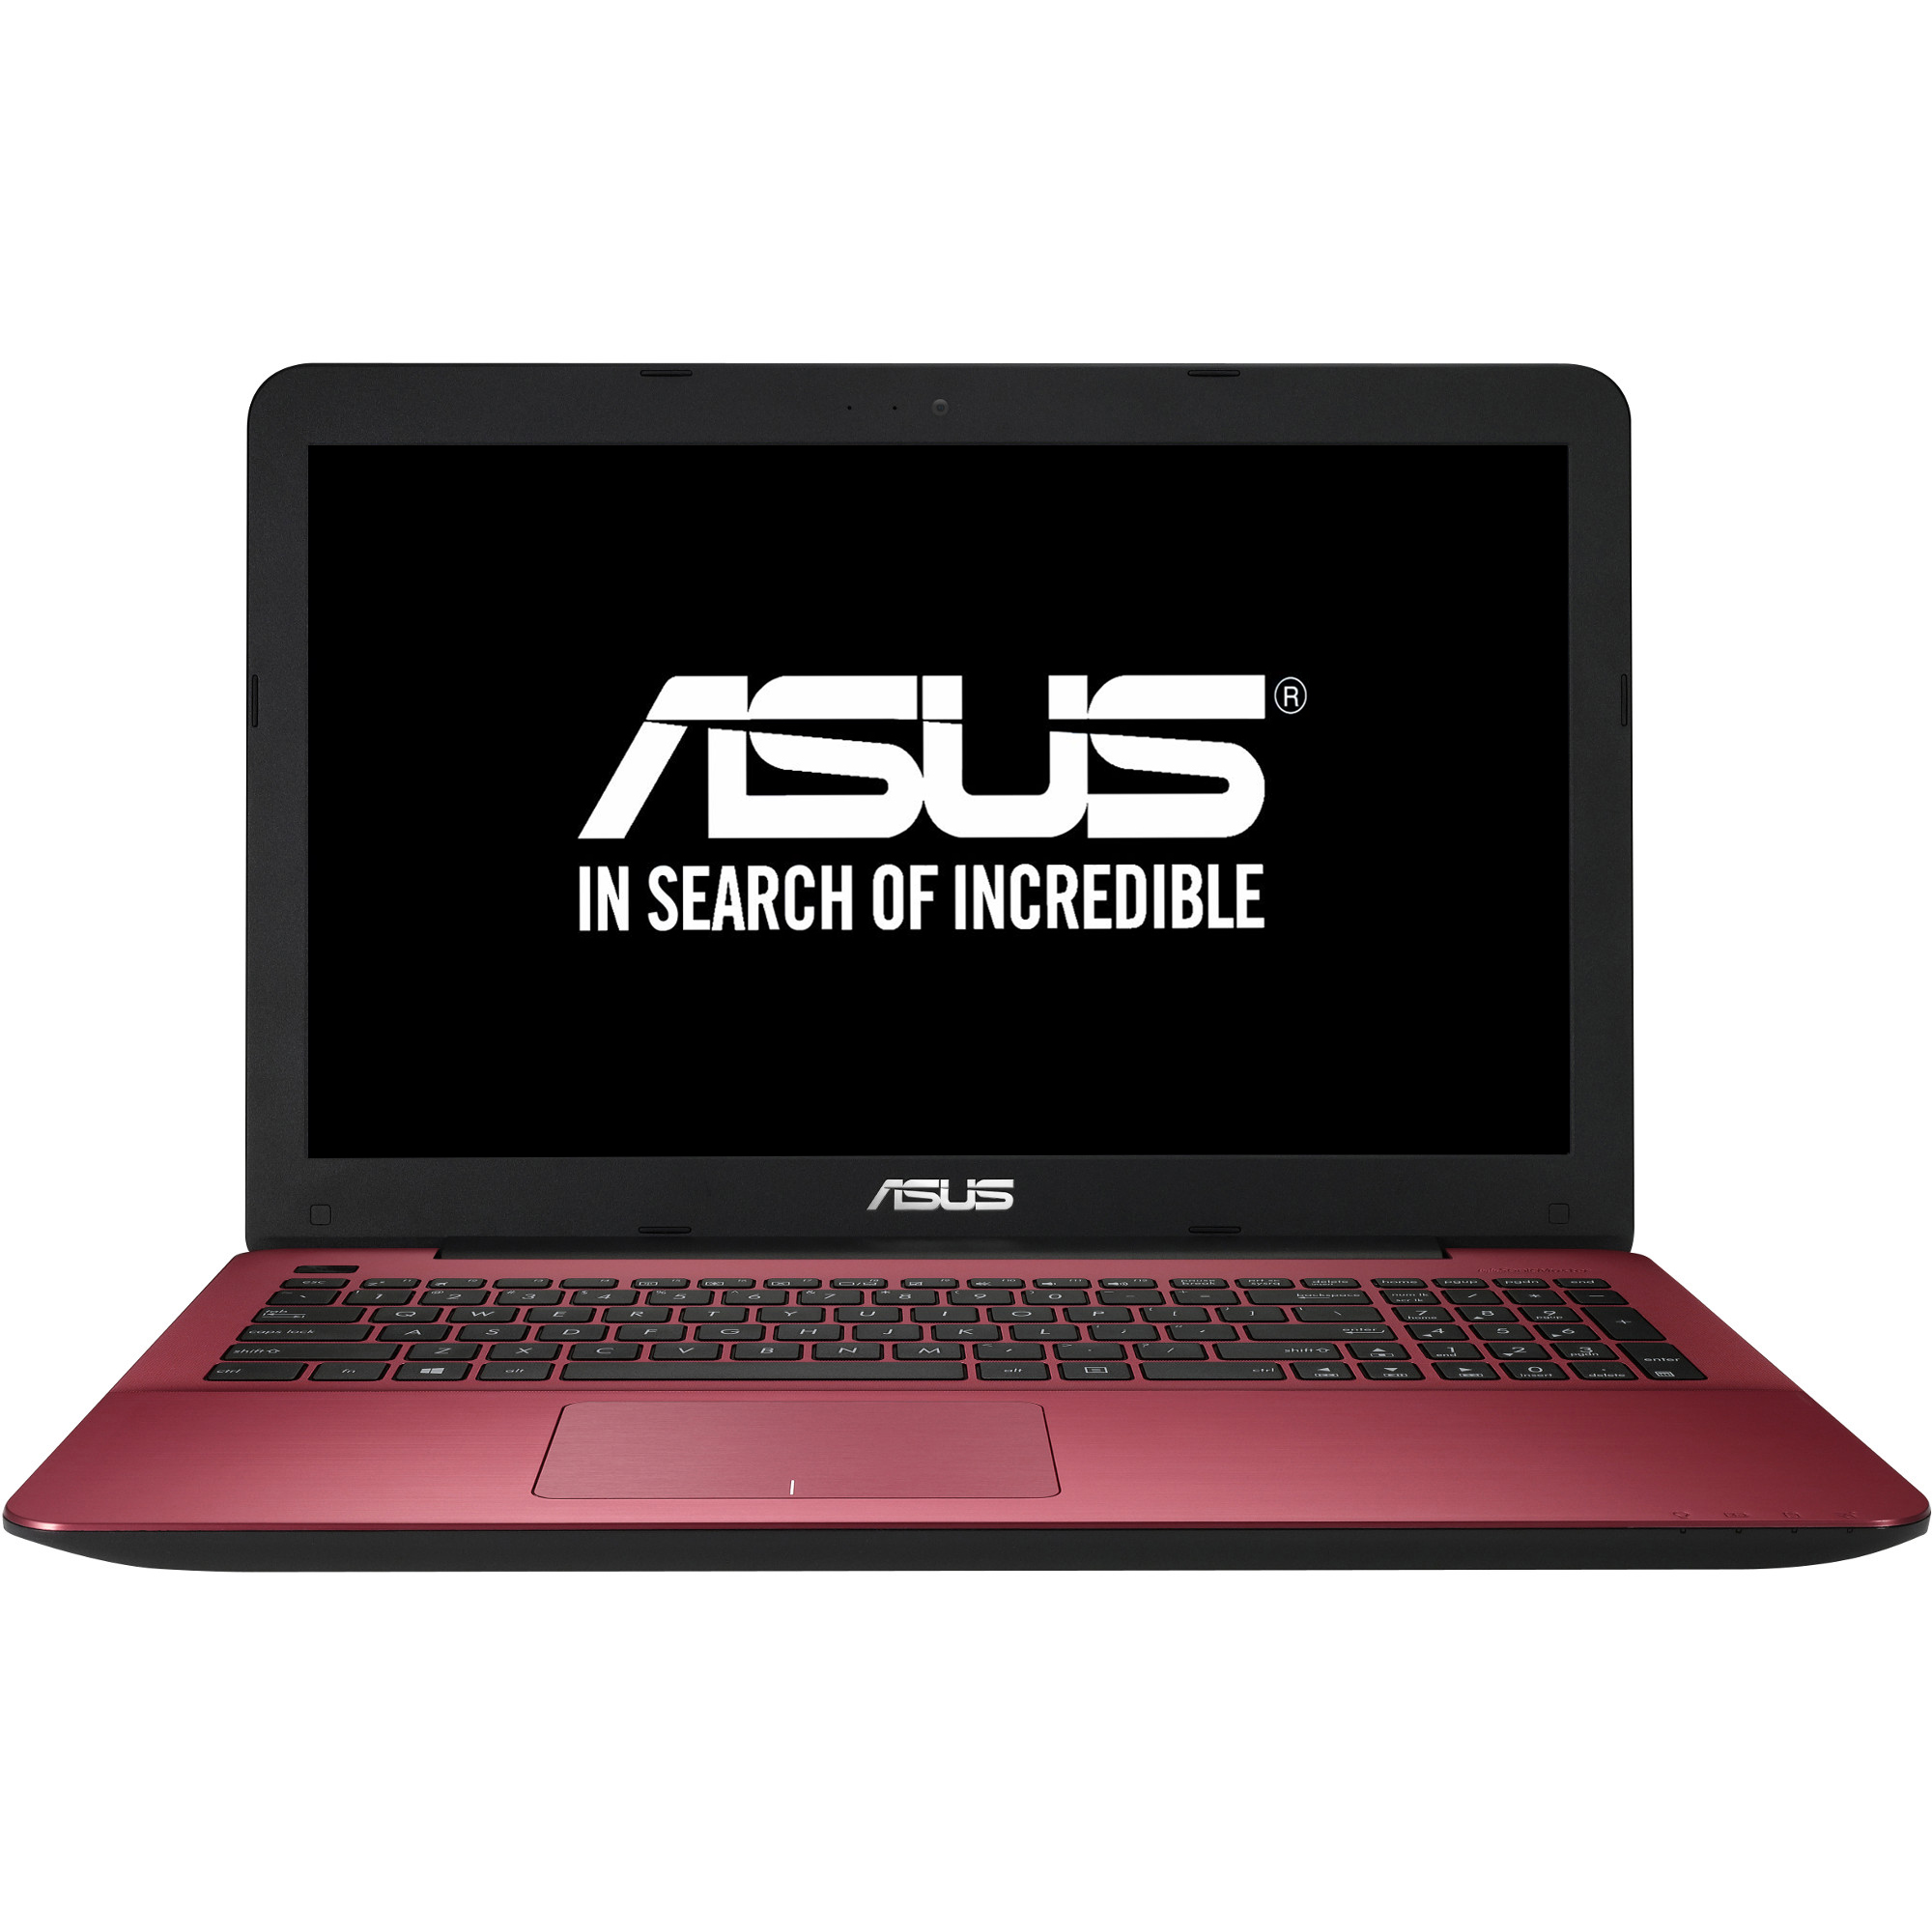  Laptop Asus A555LF-XX408D, Intel Core i3-5005U, 4GB DDR3, HDD 1TB, nVidia GeForce 930M 2GB, Free DOS 